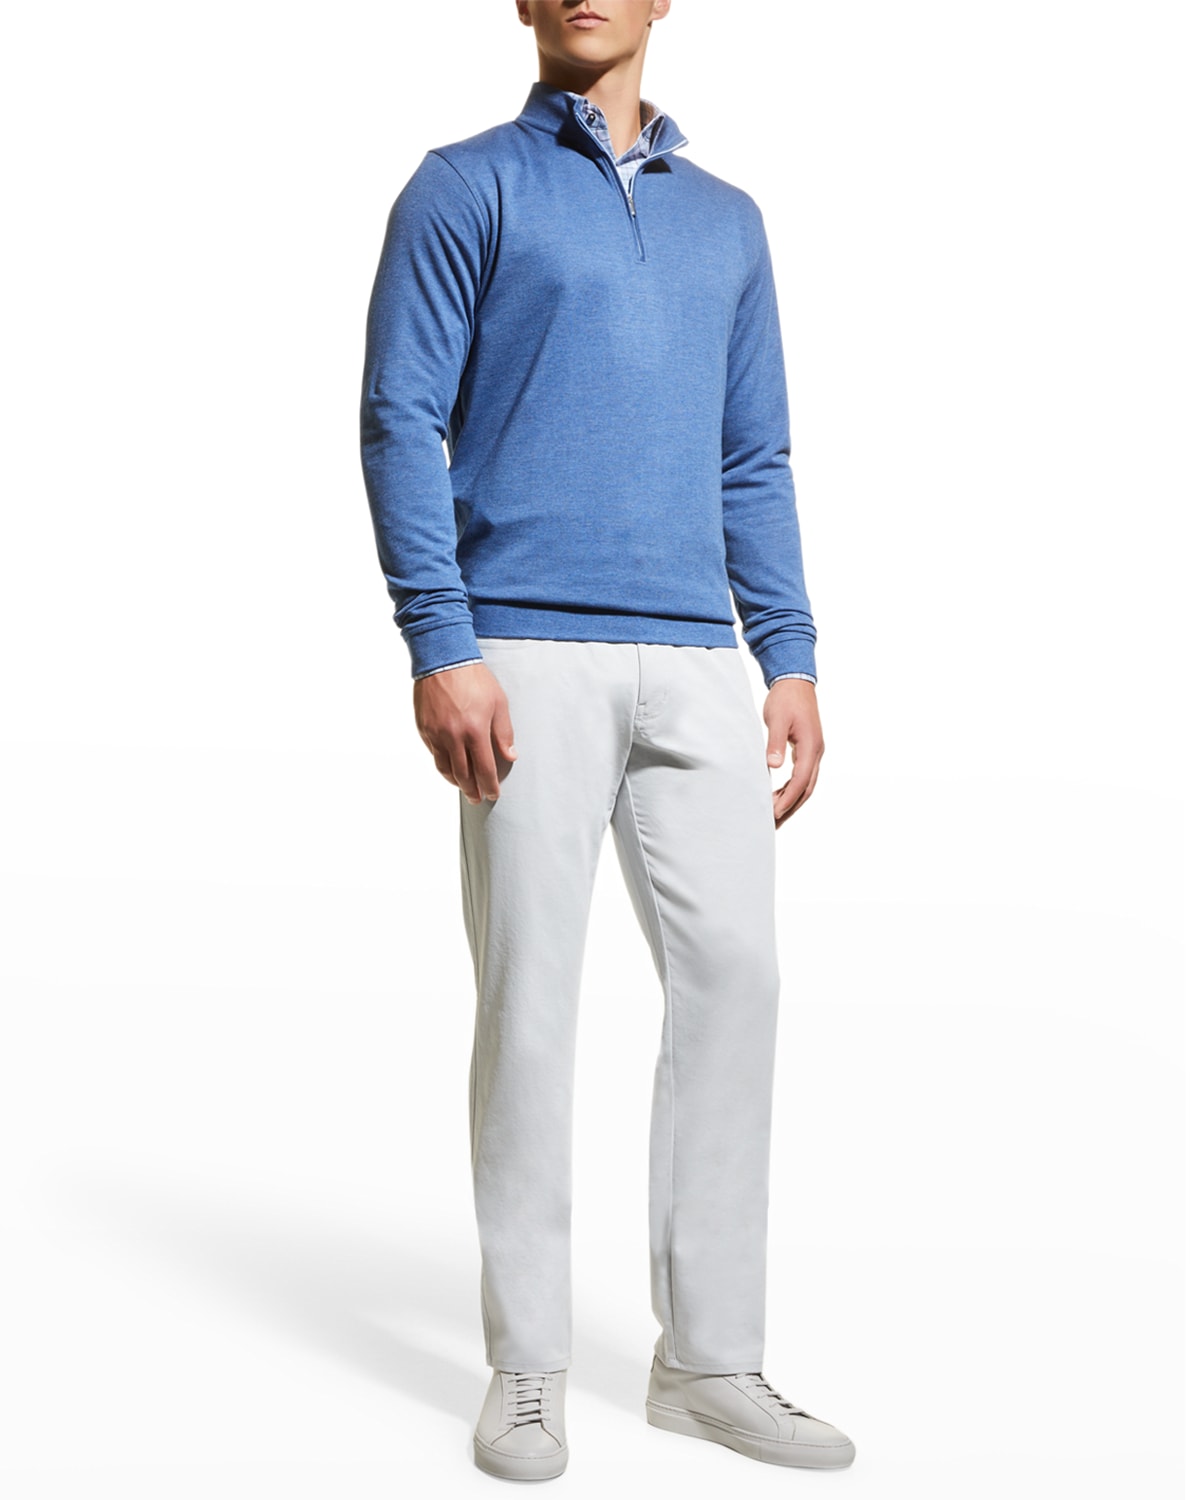 Peter Millar Men's Crown Comfort Interlock Quarter-Zip Sweater